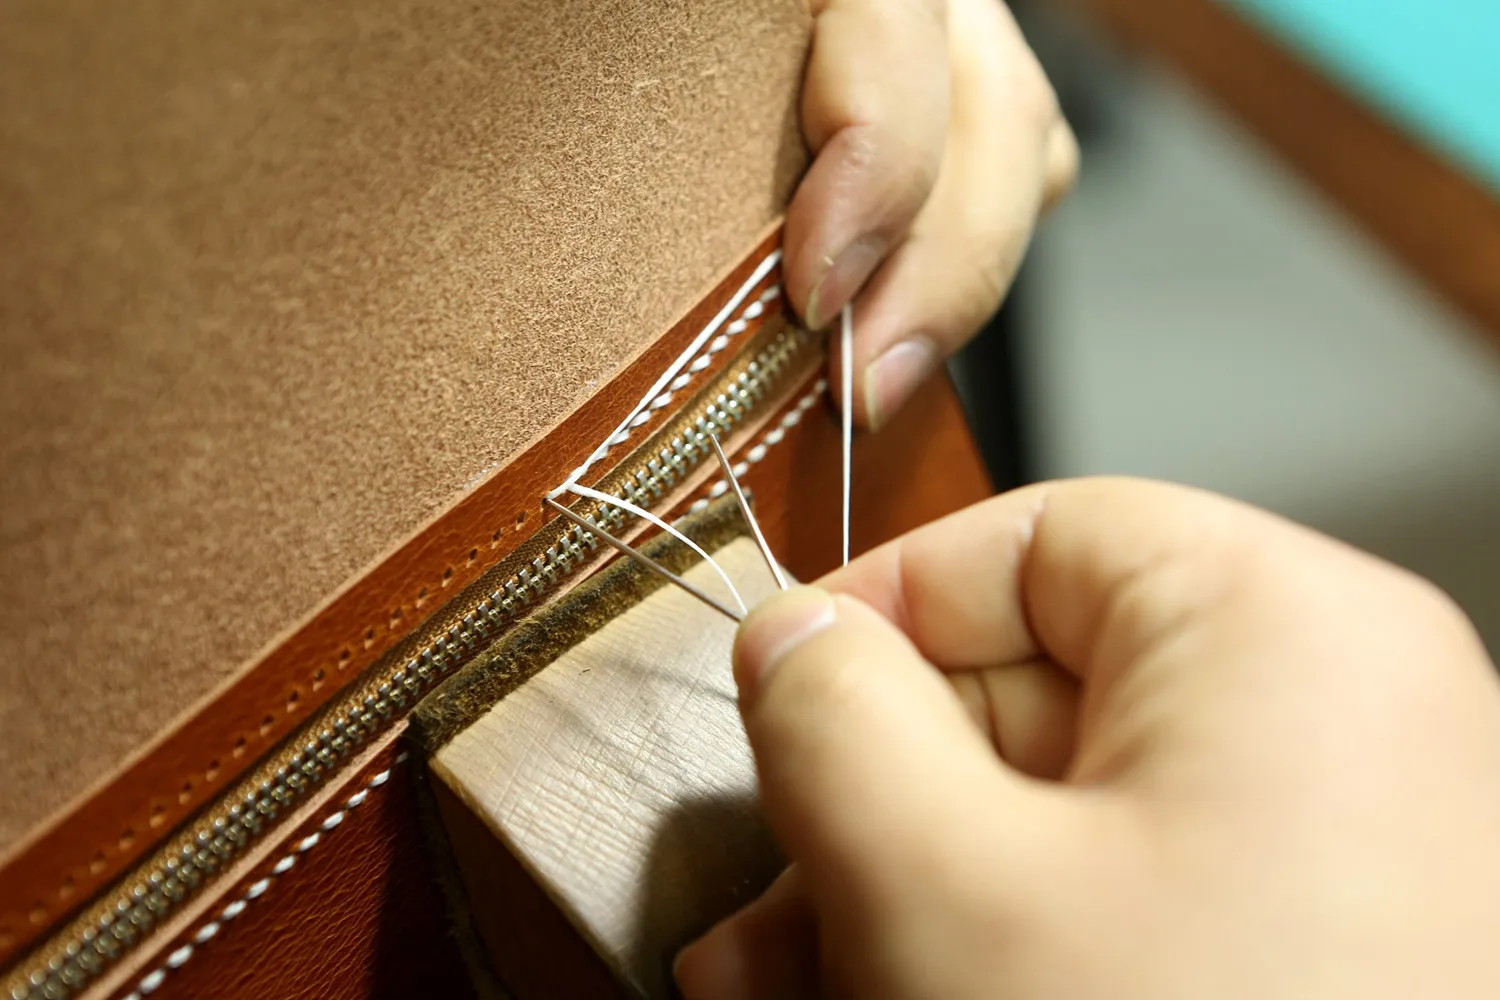 Индивидуальный кожаный блокнот 4,5x3,2" Винтажный многоразовый Ежедневник с минимальным кожаным карманом